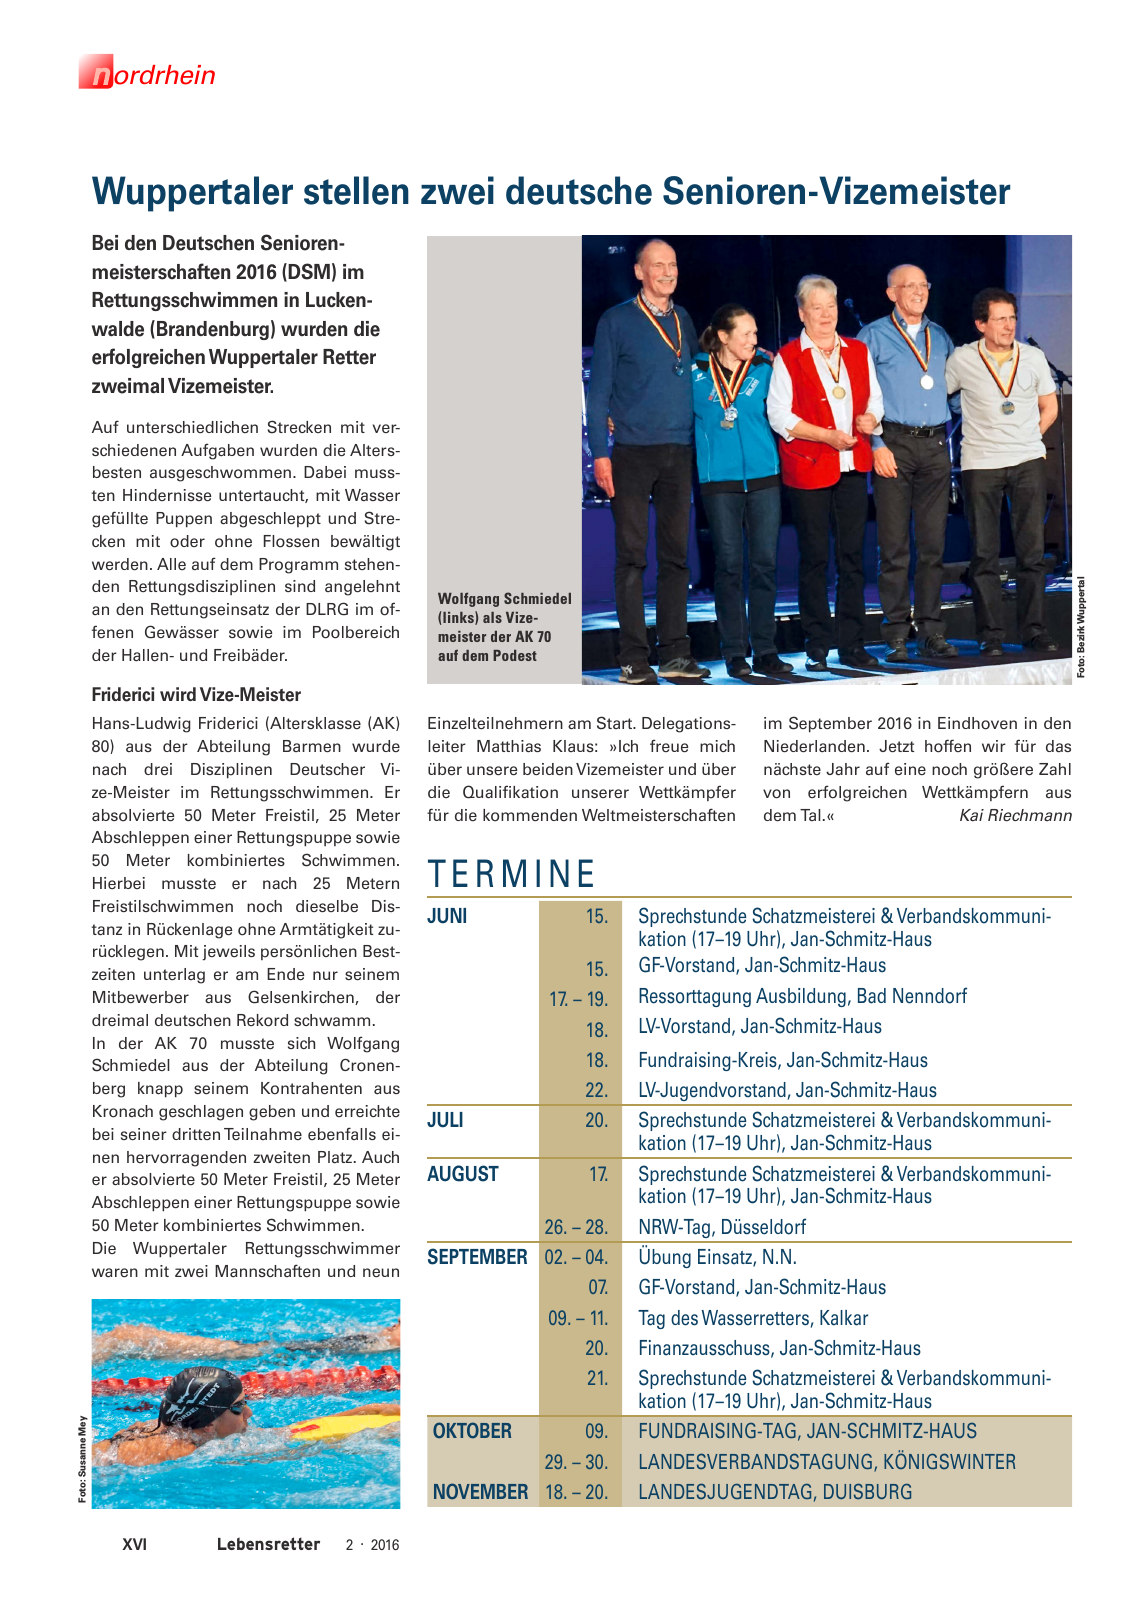 Vorschau Lebensretter 2/2016 - Regionalausgabe Nordrhein Seite 18